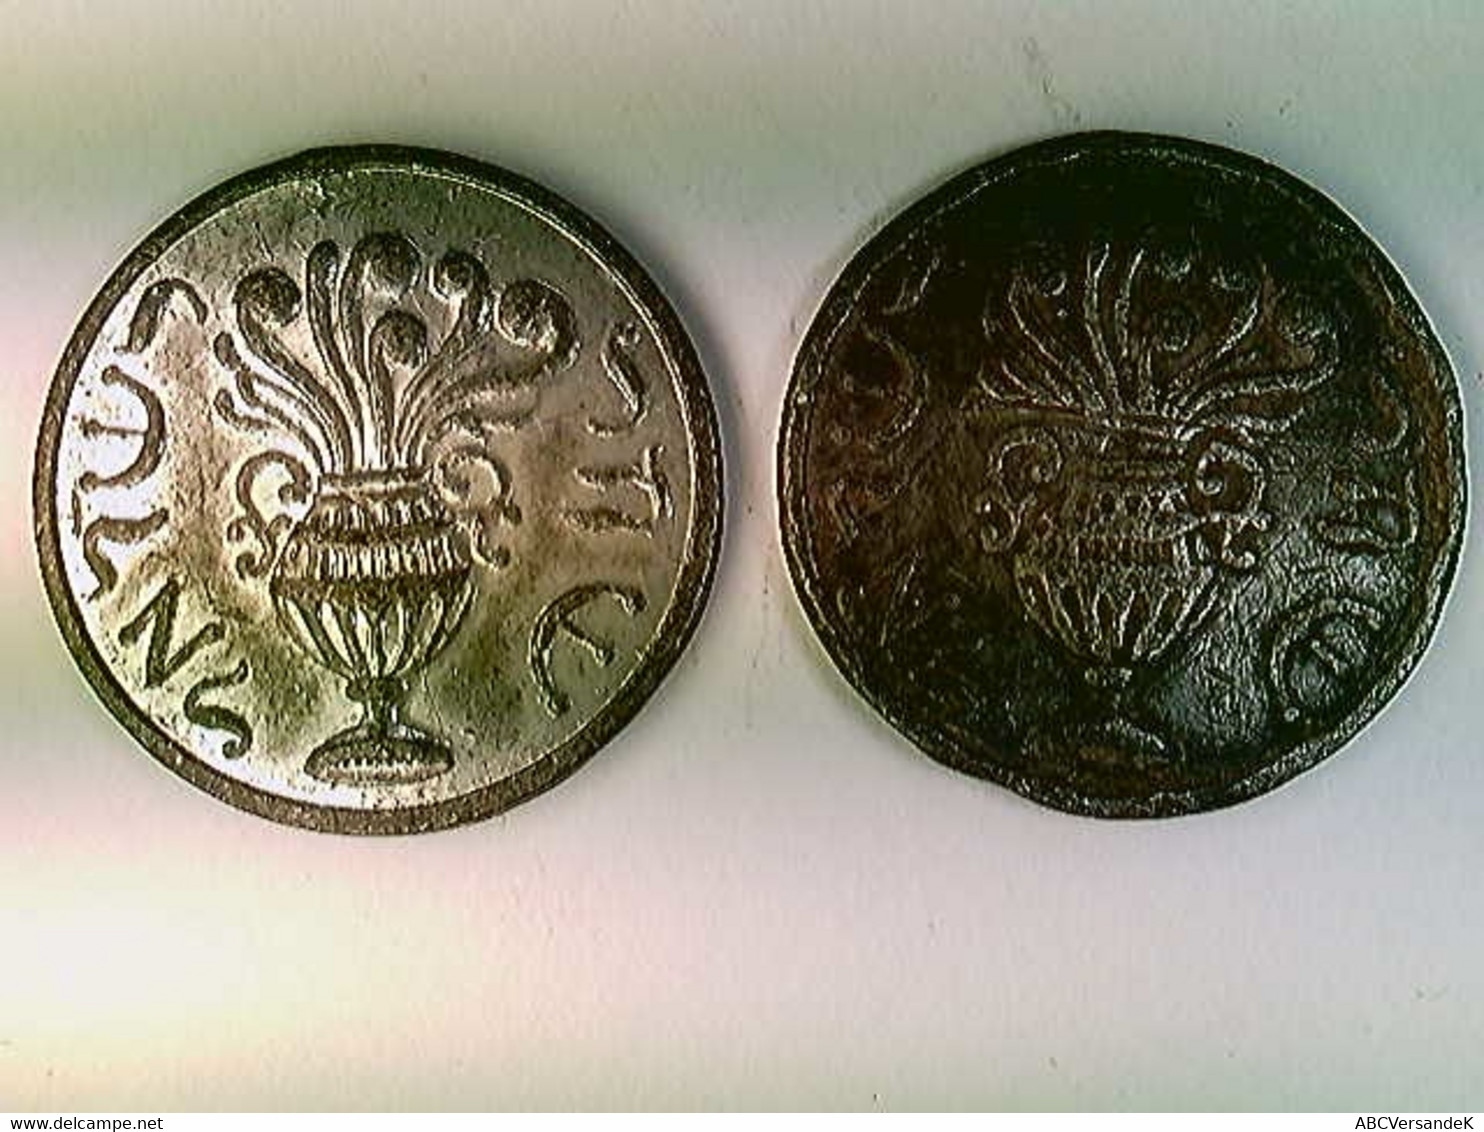 Münzen, 2x Görlitzer Schekel, 19. Jahrh., Judaika, Amphore, Weihrauch, Olivenzweig, Konvolut - Numismatica